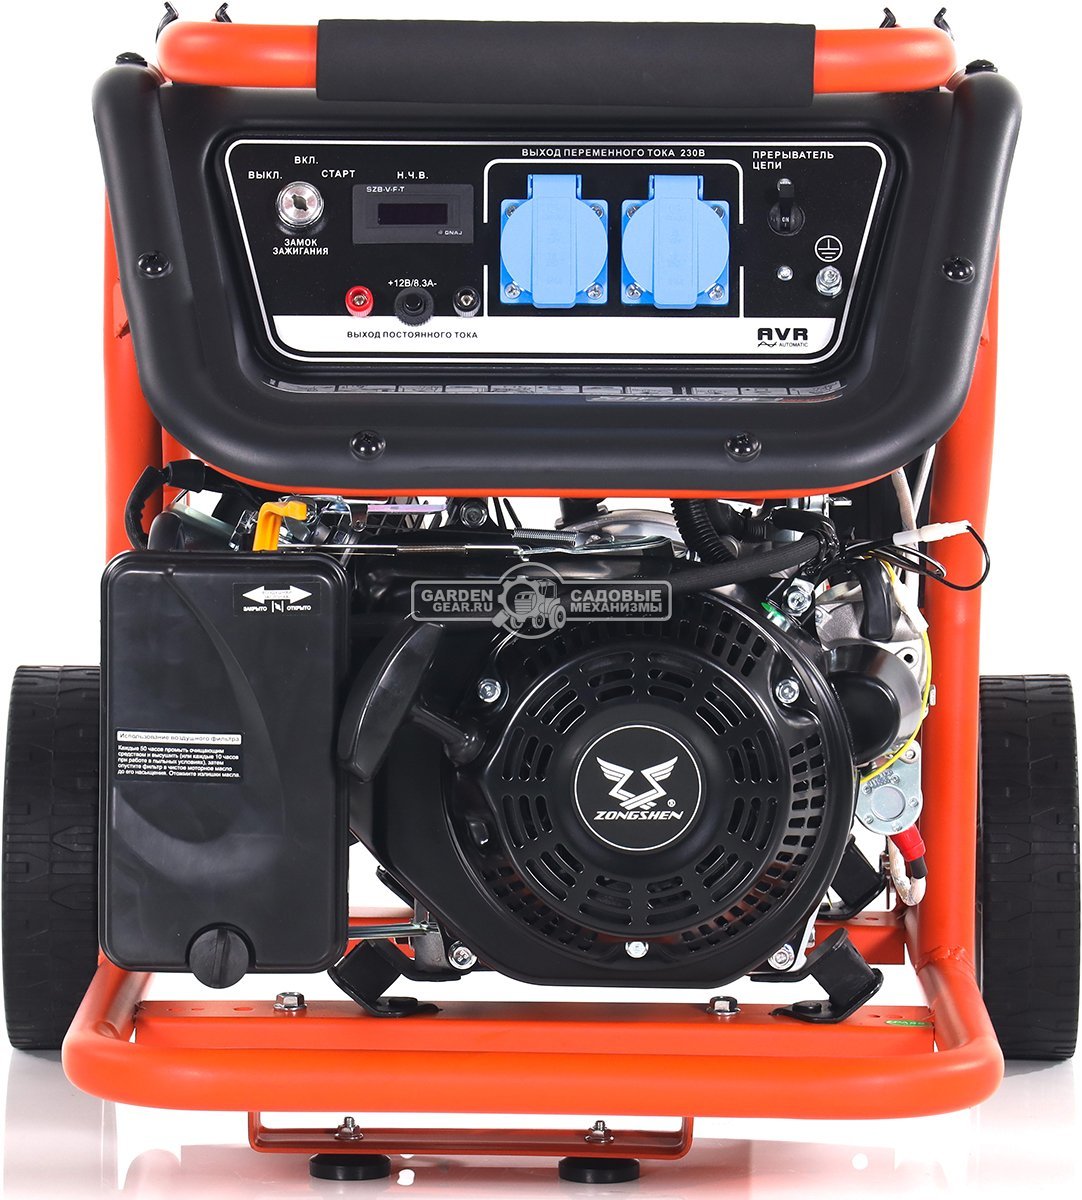 Бензиновый генератор Zongshen Premium KB 3300 E (PRC, 208 см3, 2.8/3.0 кВт, 15 л, электростарт, колеса, 52 кг)